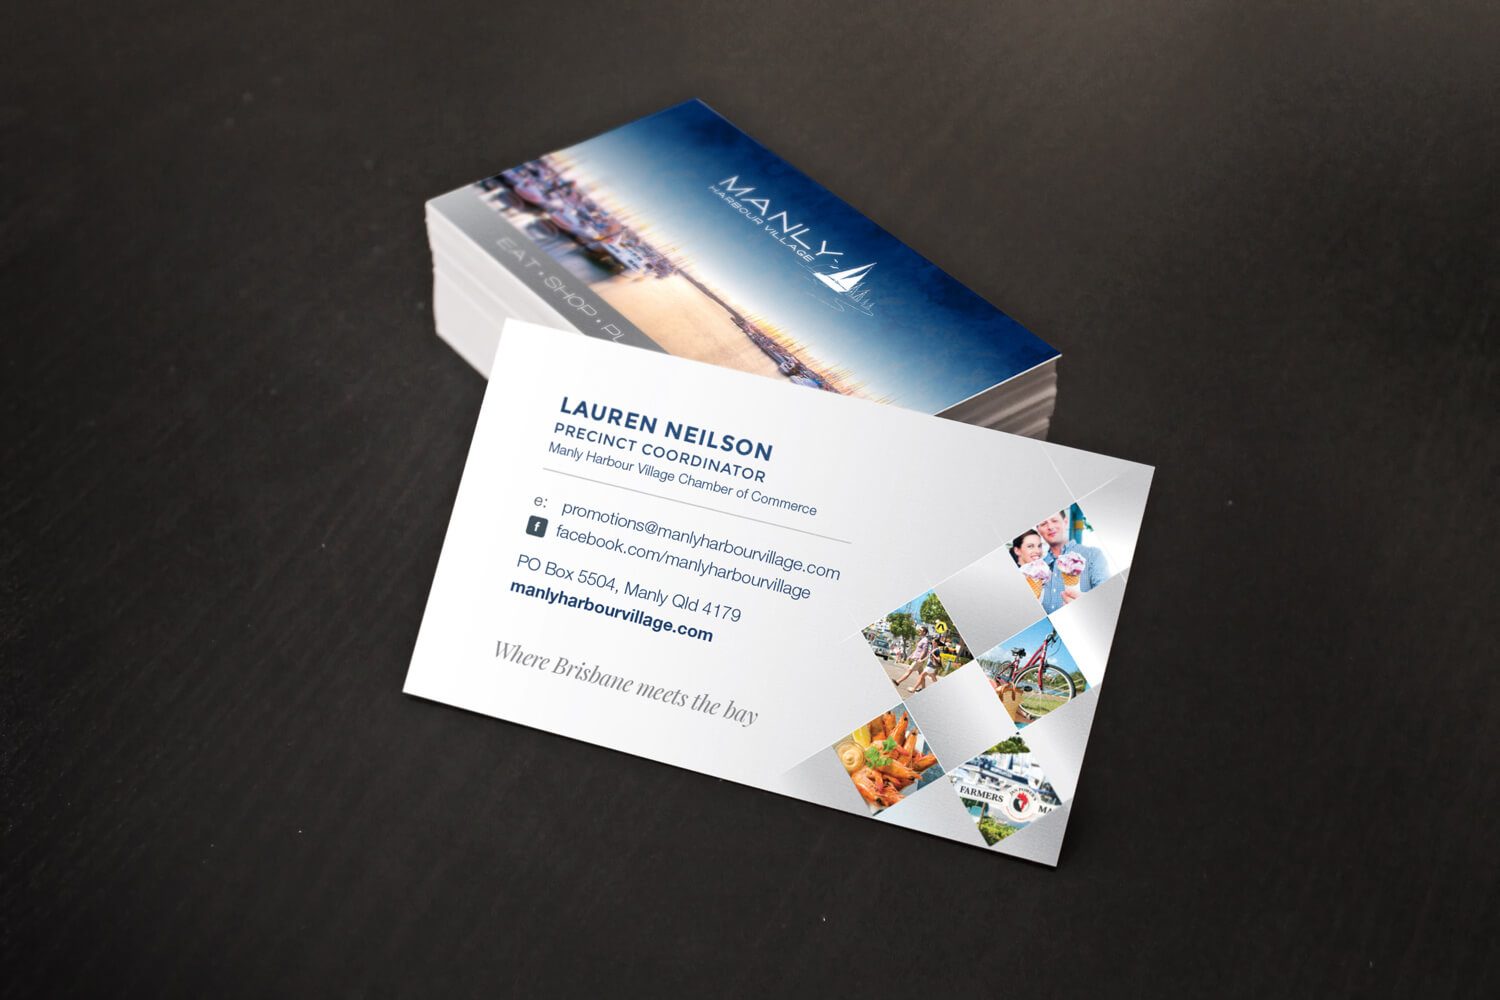 Manly-Harbour-Village-Business-Card-Mockup-1